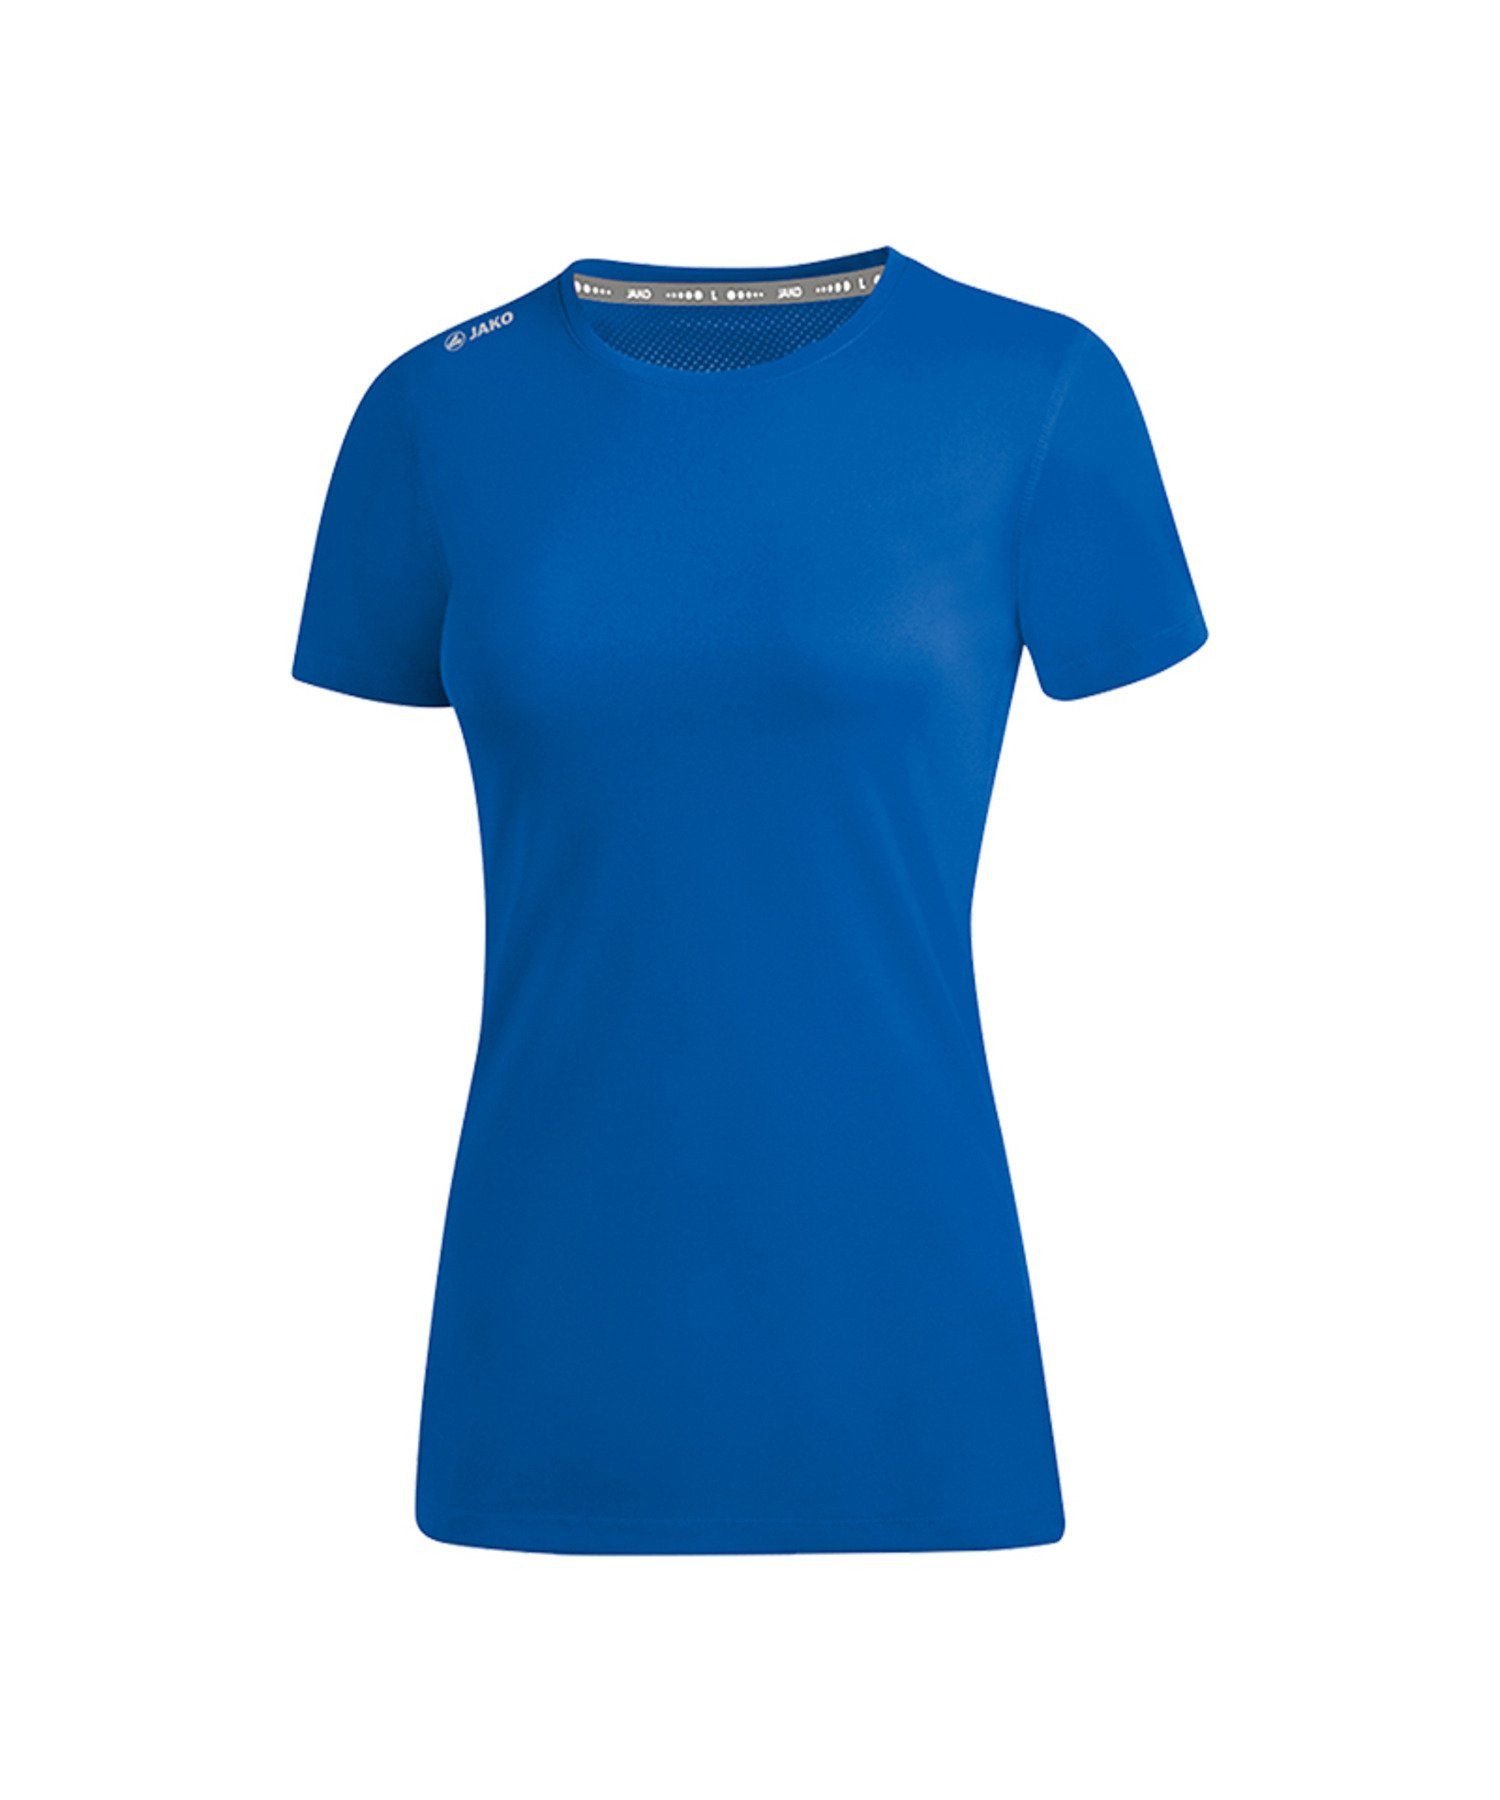 Jako Laufshirt Run 2.0 Damen default Blau Running T-Shirt